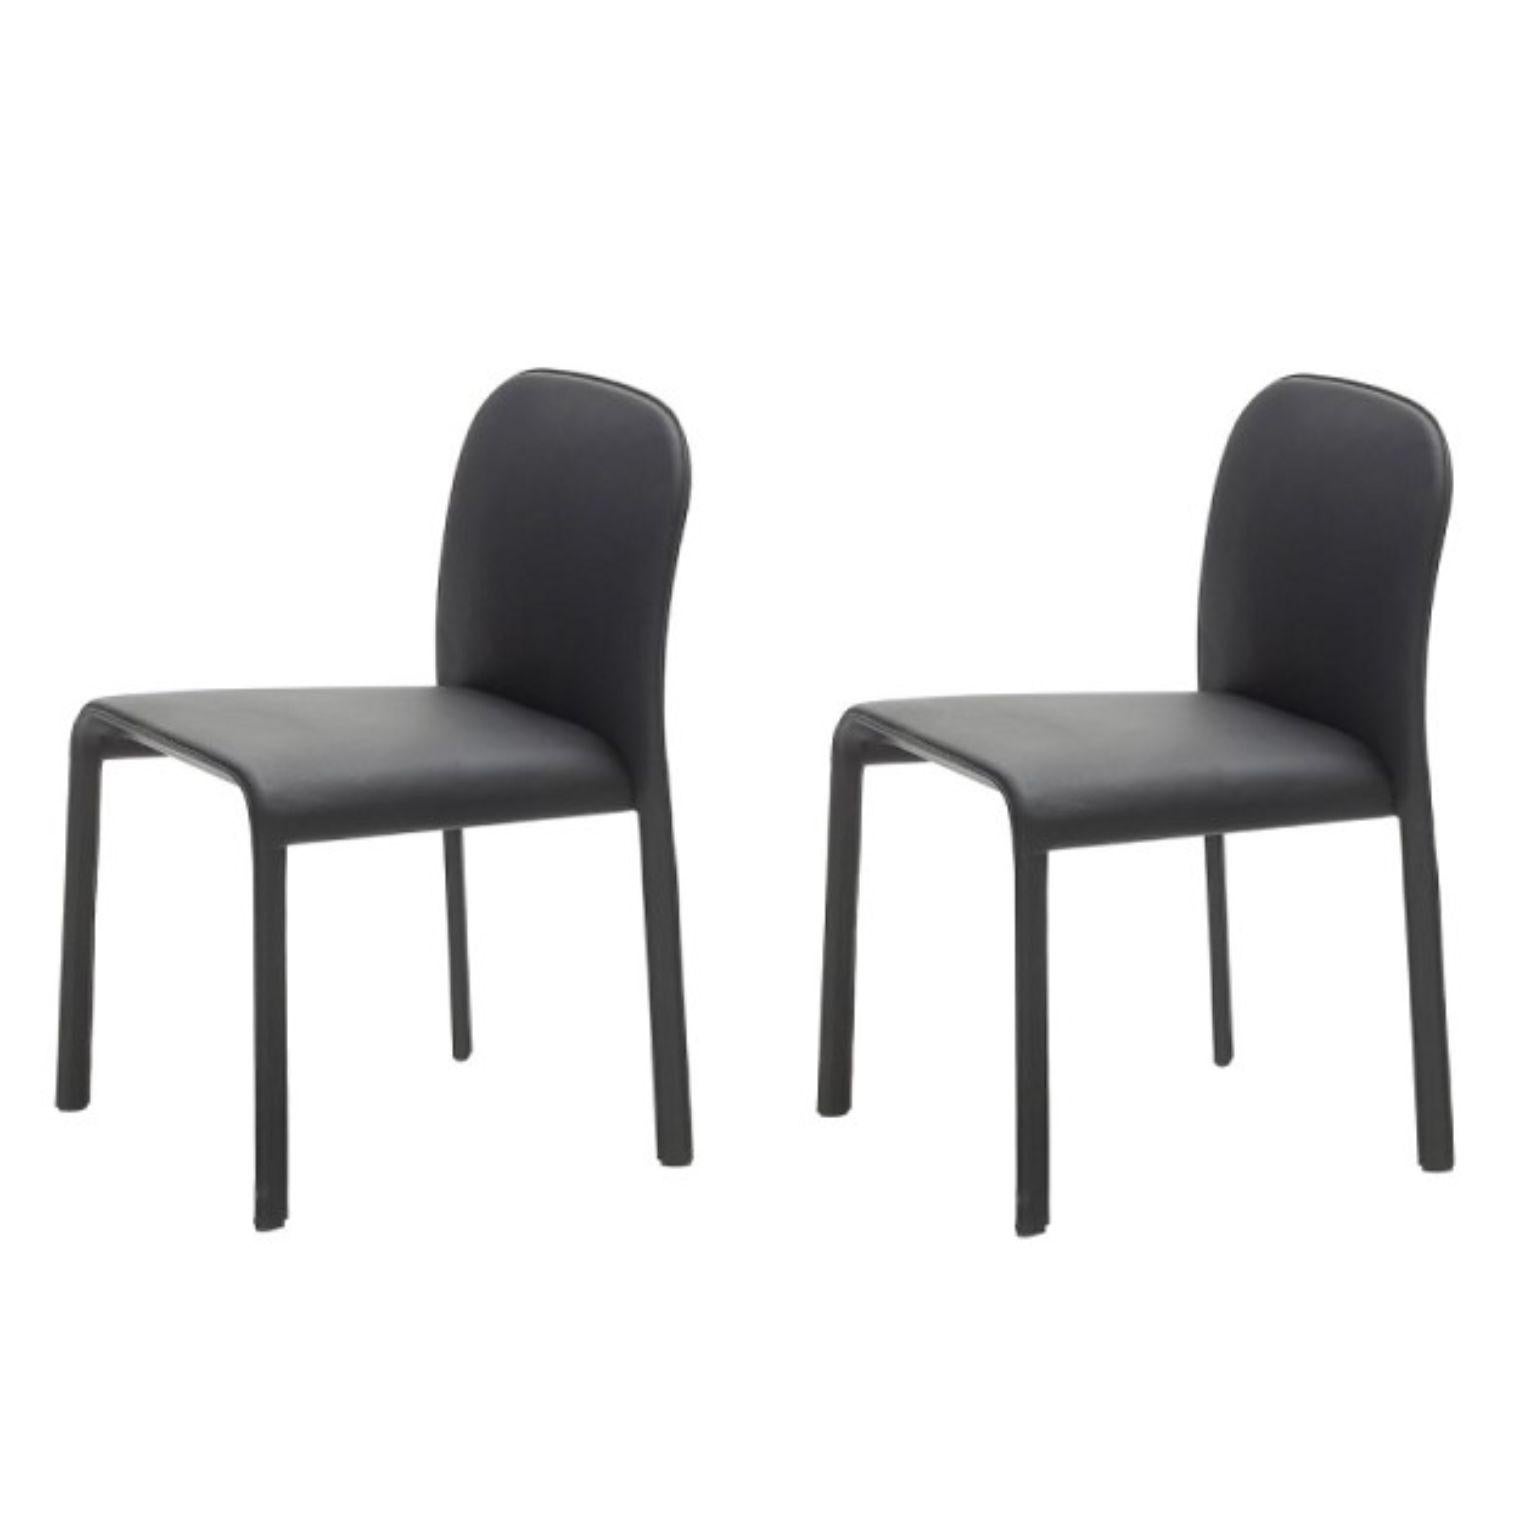 Ensemble de 2 chaises Scala de Patrick Jouin
Matériaux : chaise recouverte de cuir de vachette pigmenté corrigé. Dossier en cuir refendu. Couleurs : noir, brun, blanc, rouge.
Dimensions : D 45 x L 55 x H 80 cm
Egalement disponible en couleurs :